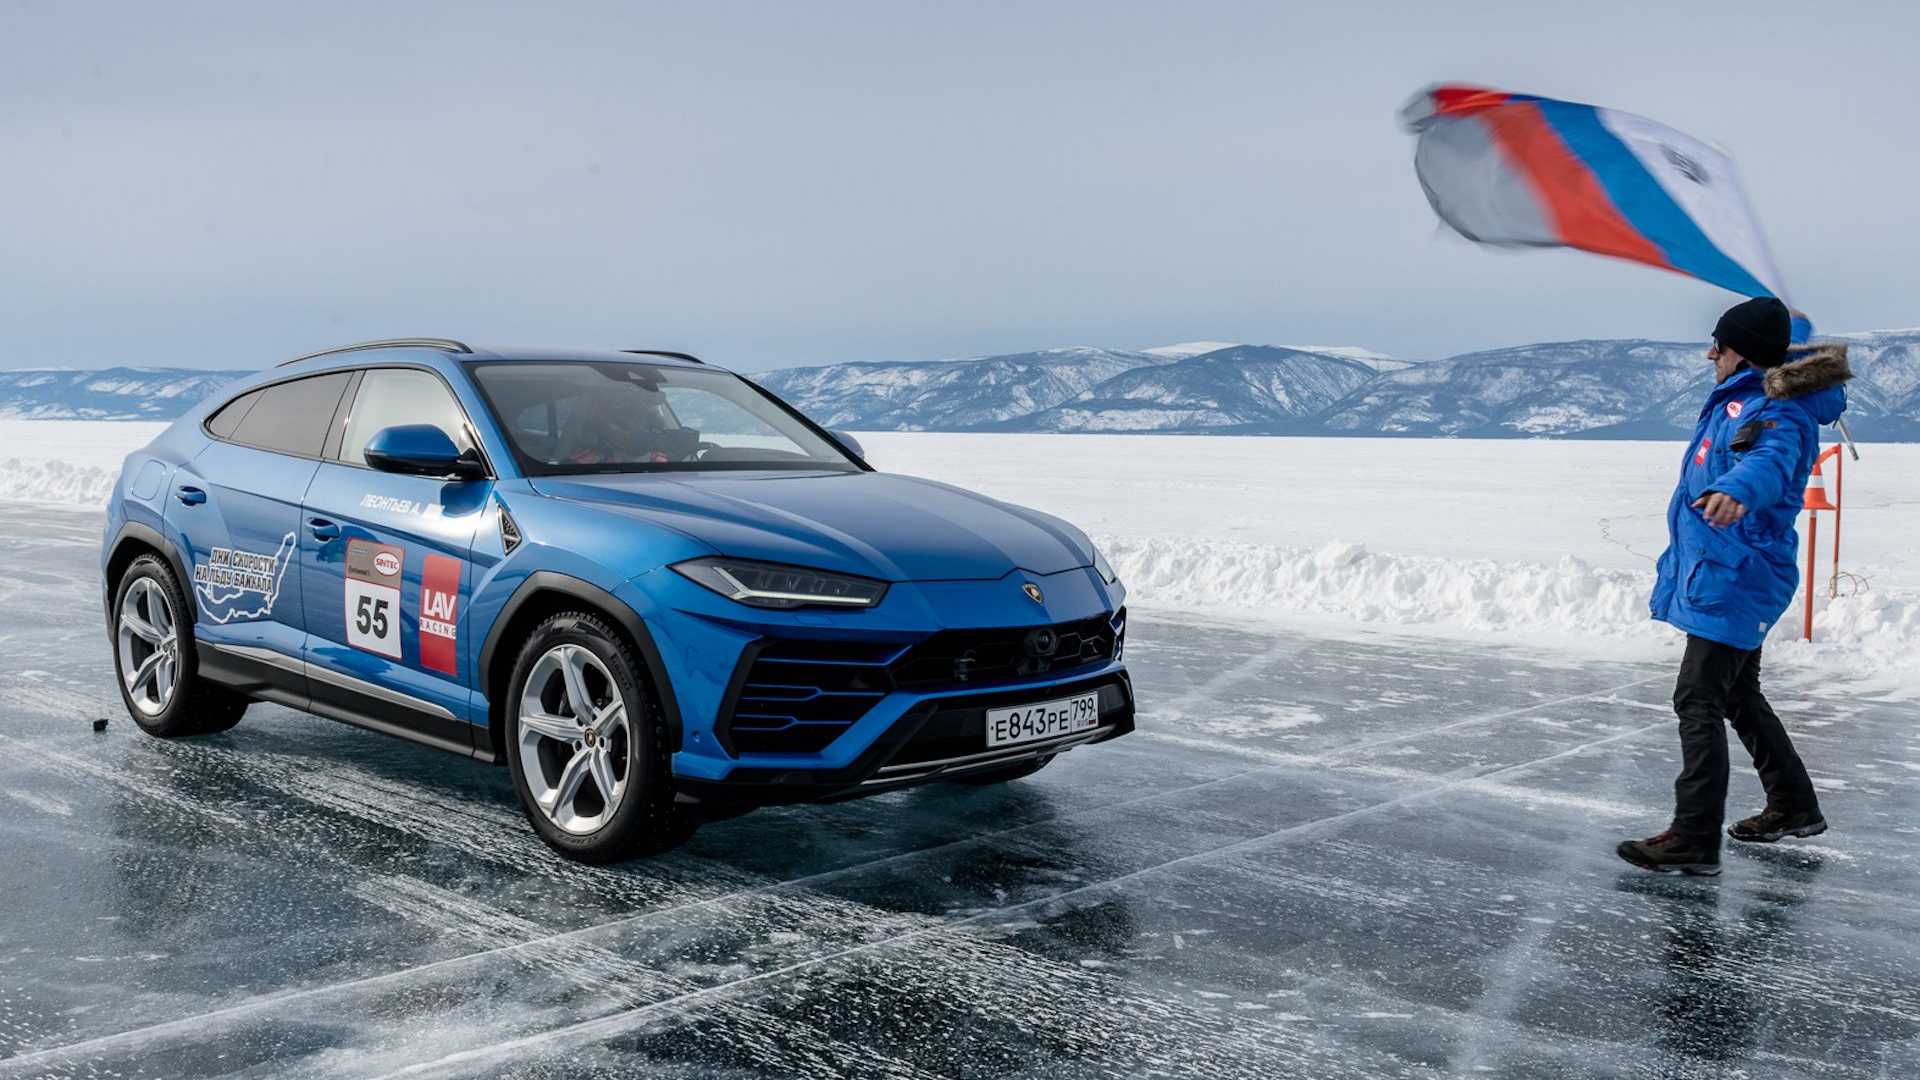 کراس اور لامبورگینی اوروس / Lamborghini Urus آبی رنگ در حال ثبت رکورد سرعت روی یخ